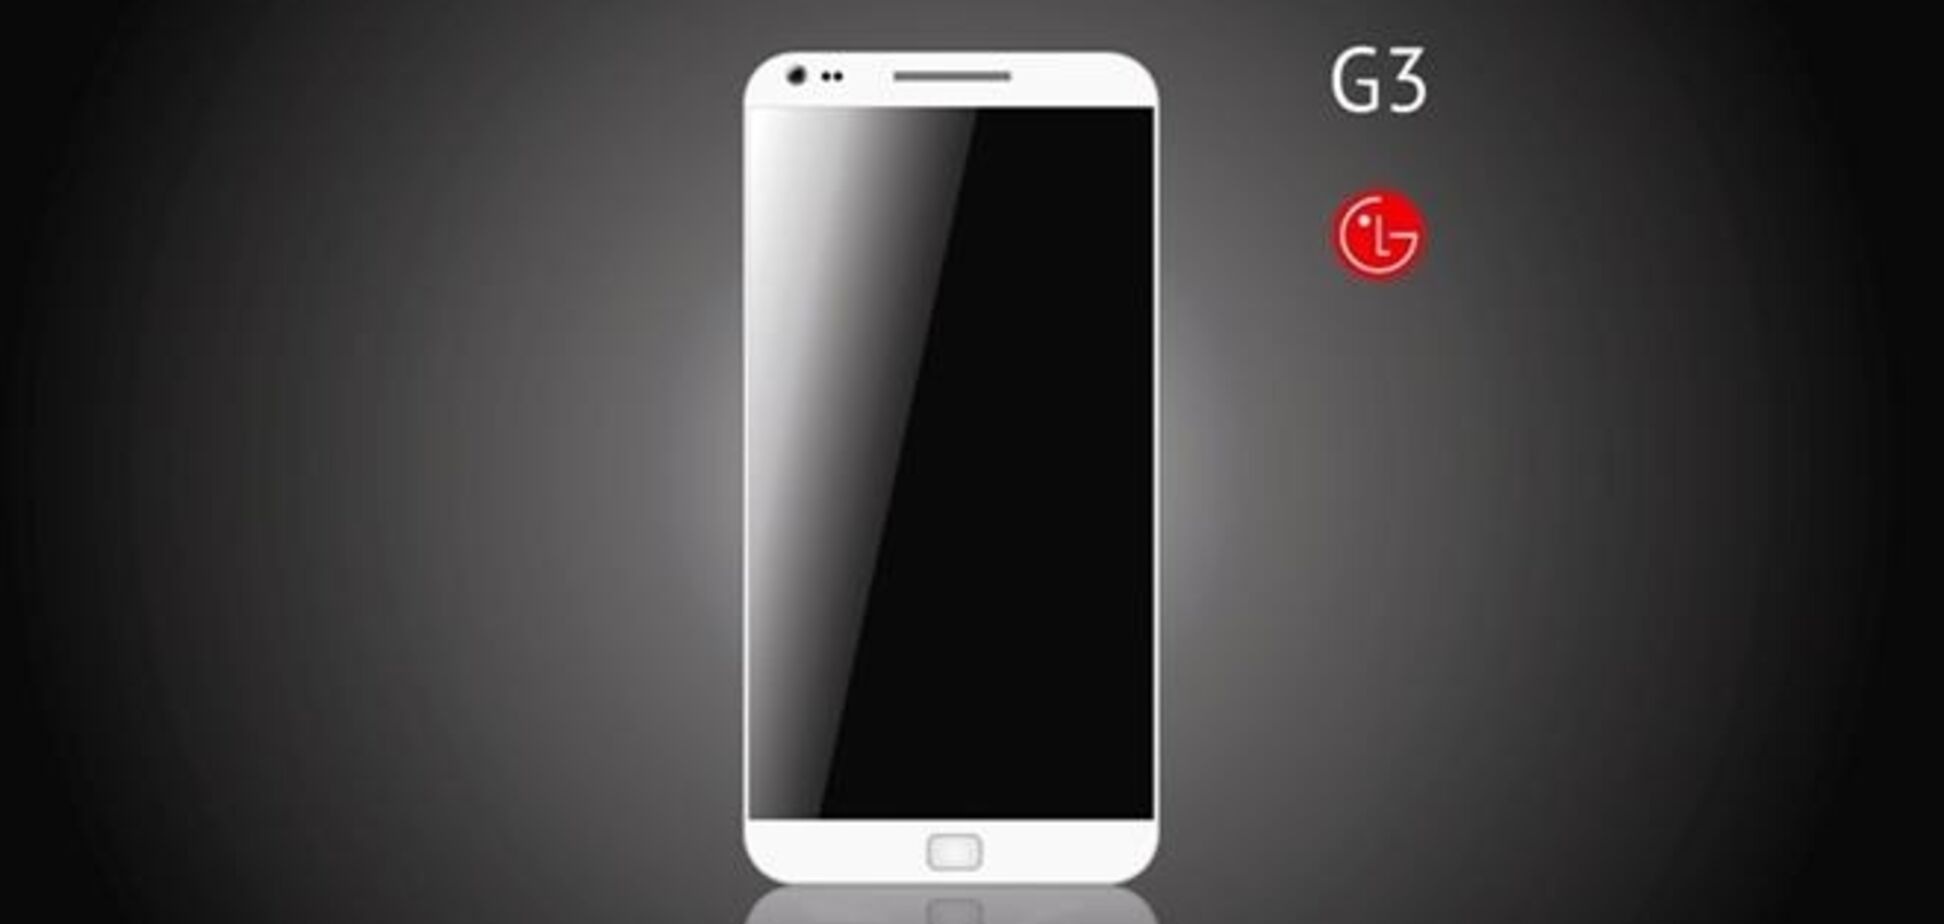 LG показало изменения интерфейса телефона в новом флагмане G3